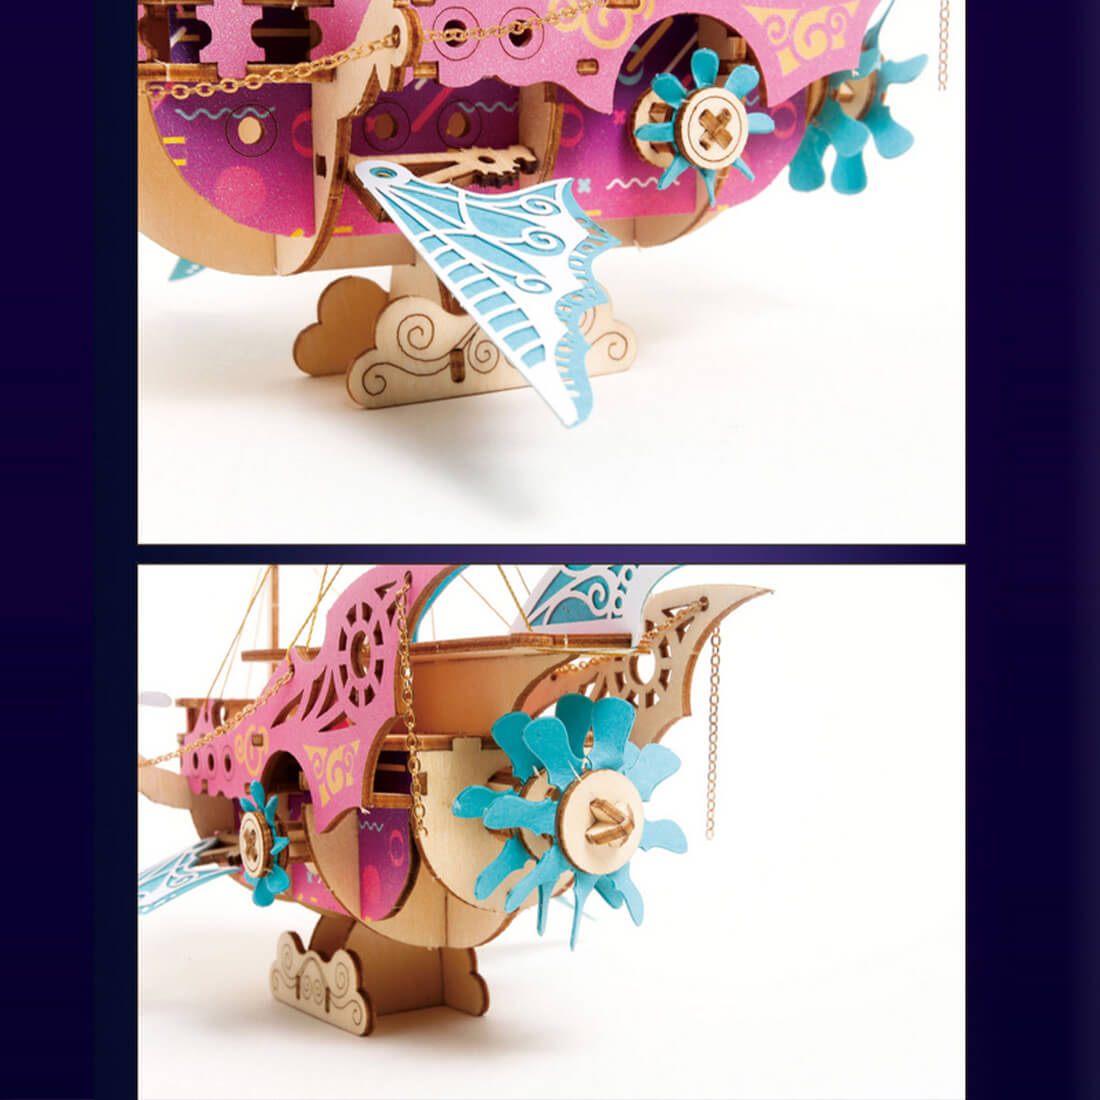 DIY Fantasy Arabian Spaceship 3D Wooden Steampunk Toy Model